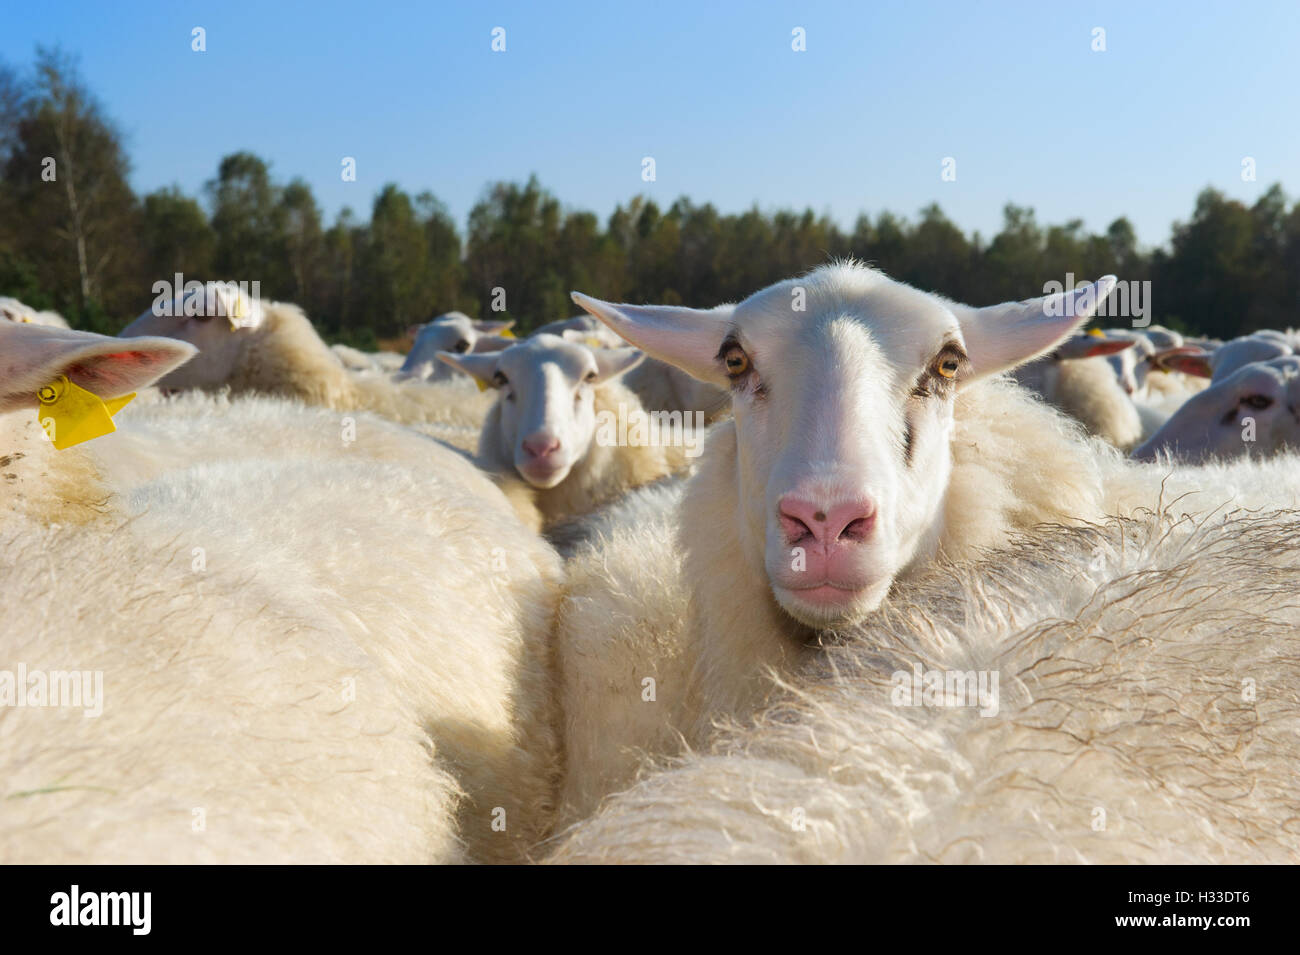 Sheep herd Stock Photo